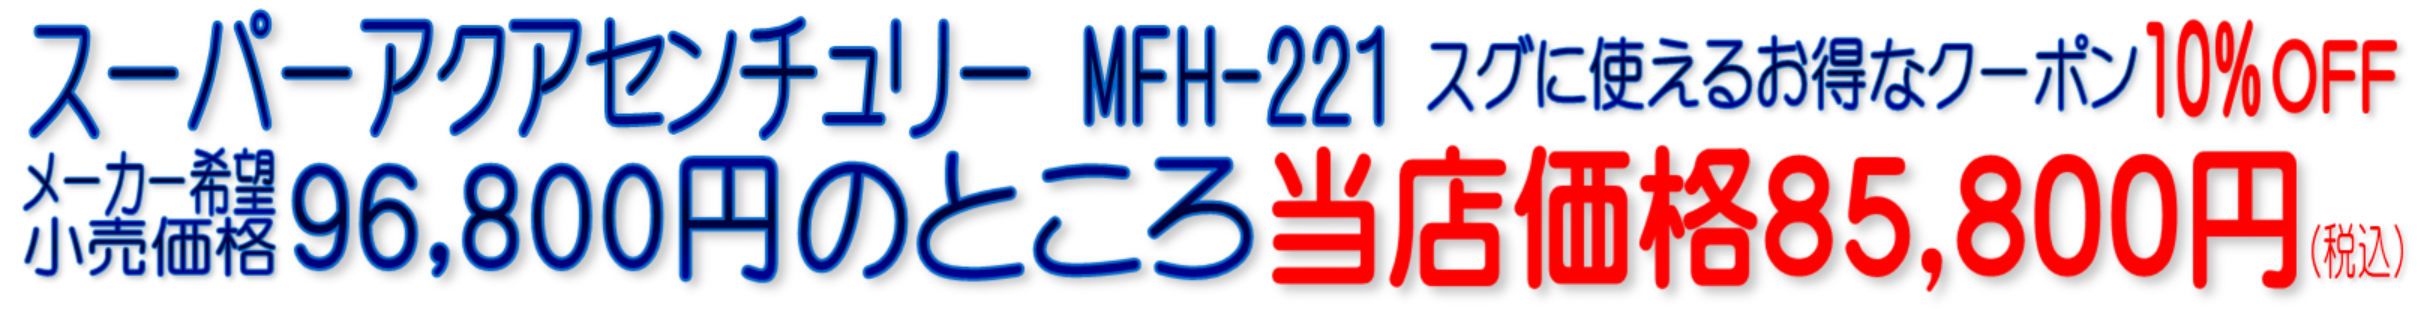 MFH-221